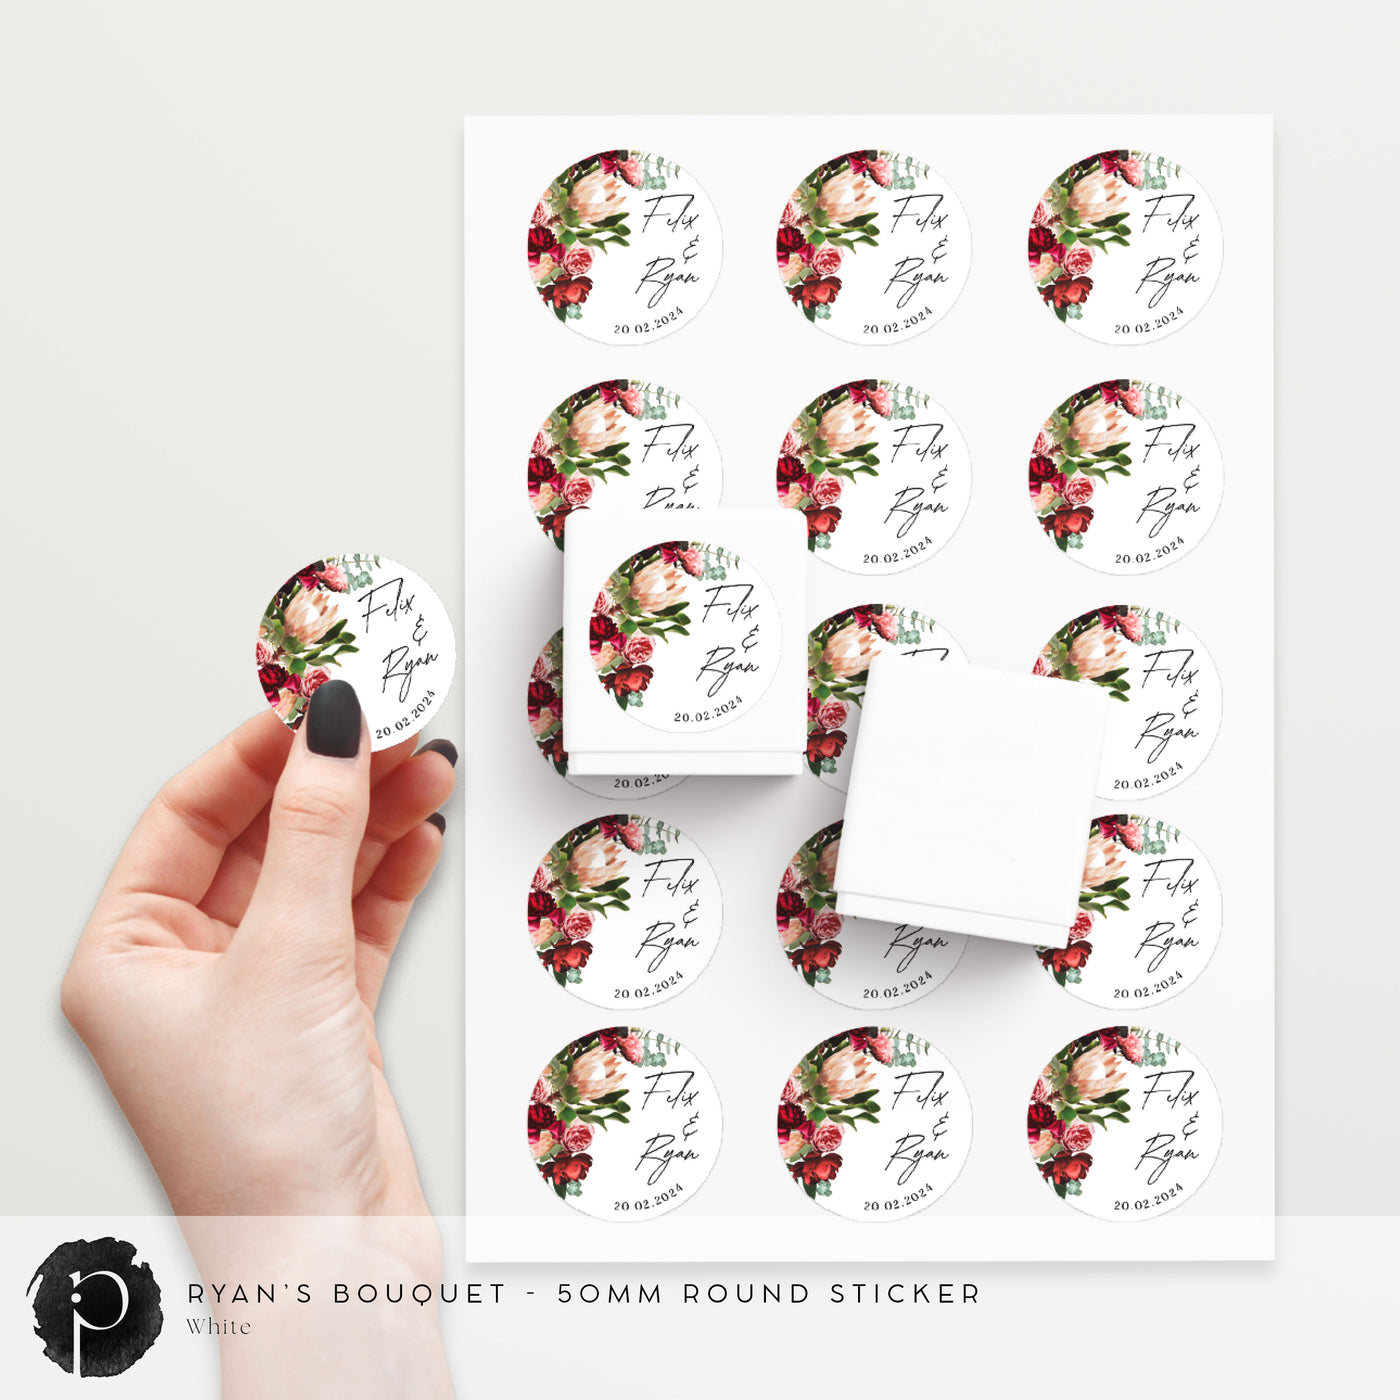 Ryan's Bouquet - Stickers/Seals